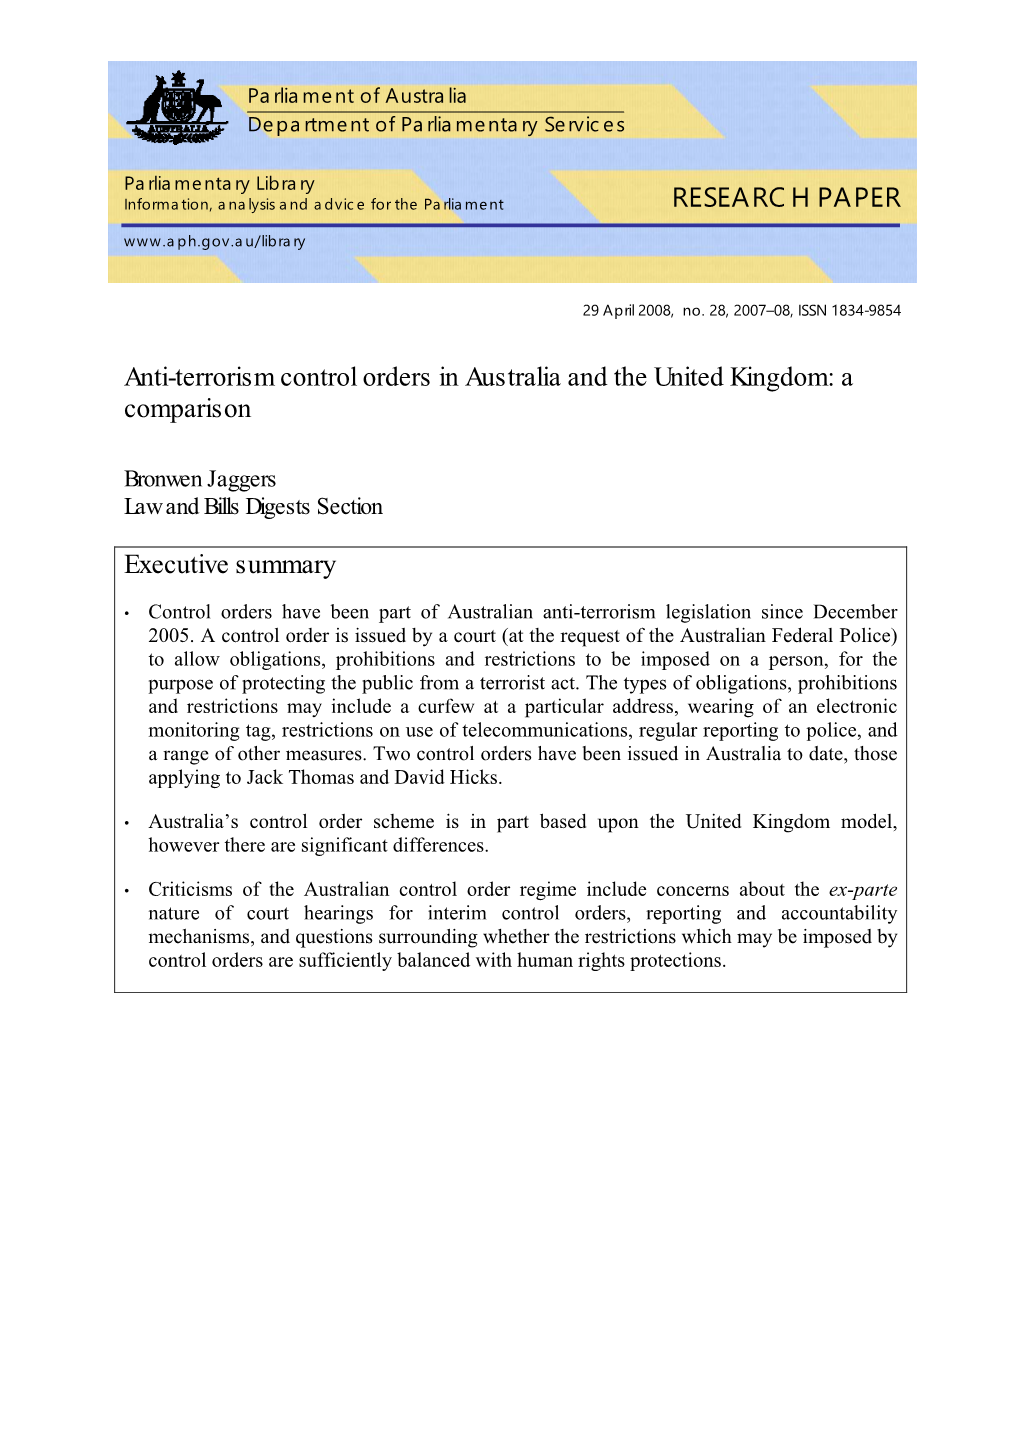 Anti-Terrorism Control Orders in Australia and the United Kingdom: a Comparison